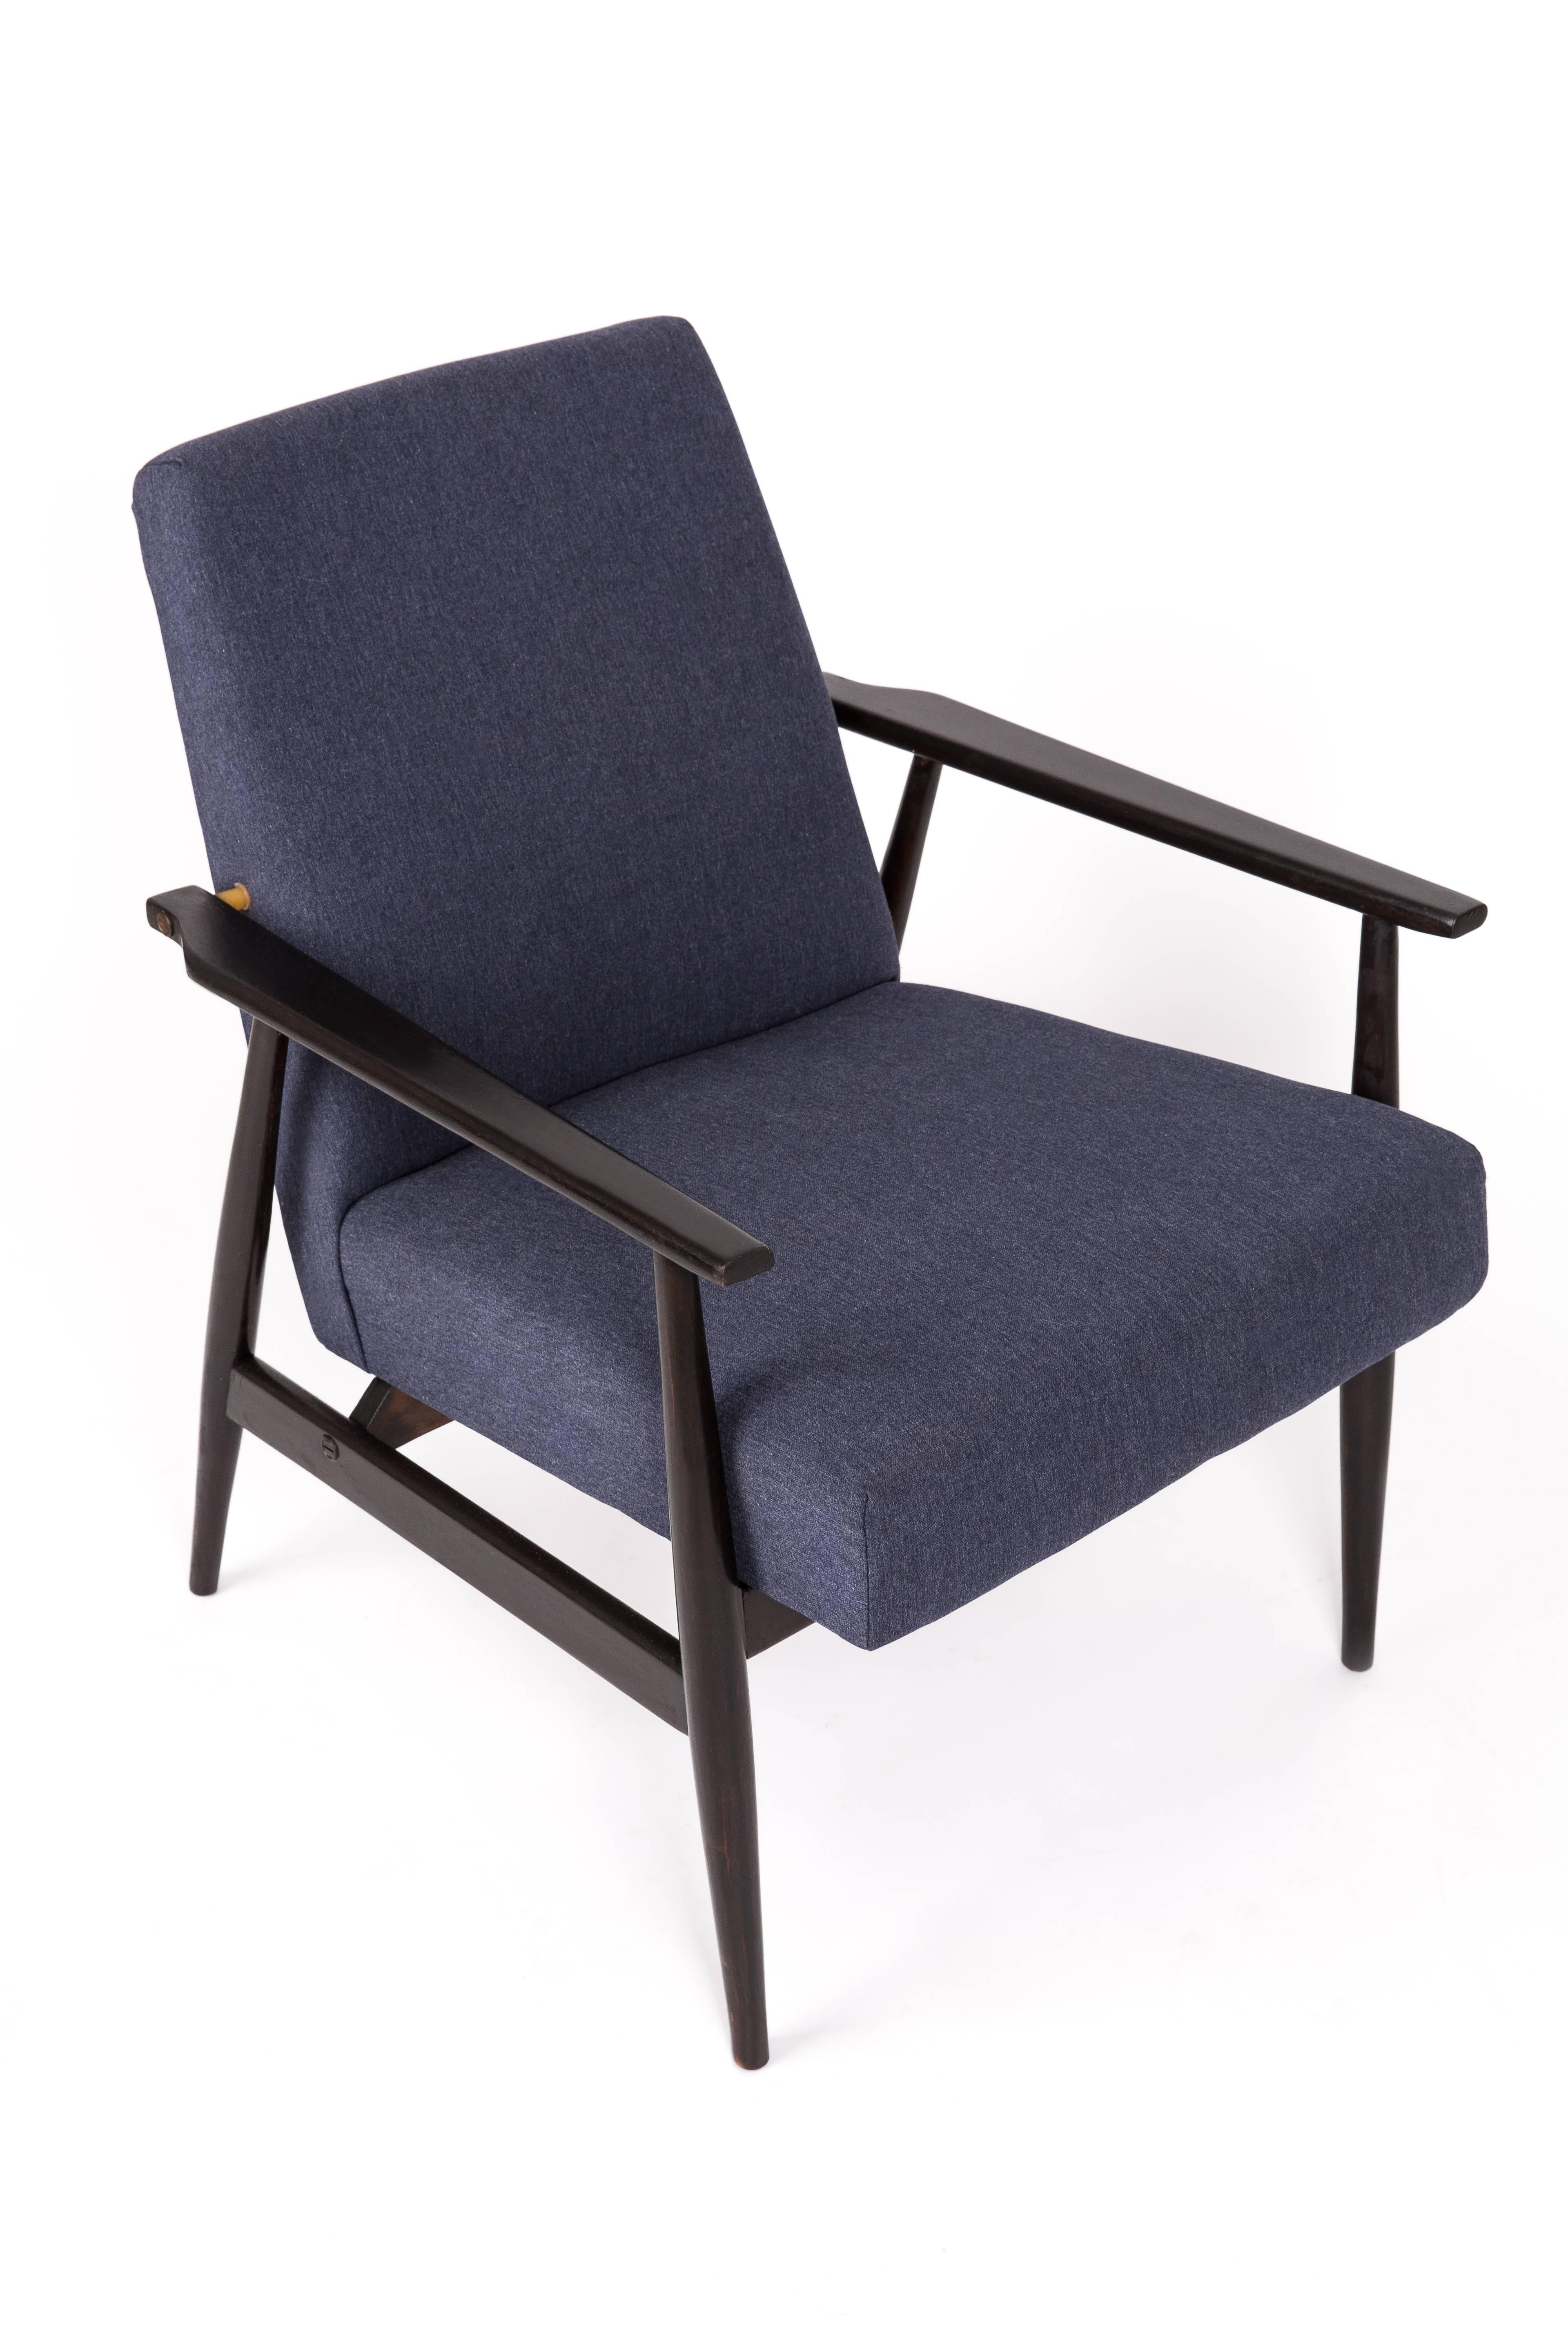 Ein schöner, restaurierter Sessel von Henryk Lis. Möbel nach kompletter Renovierung durch Schreiner und Polsterei. Der Stoff, der mit einer Rückenlehne und einer Sitzfläche bezogen ist, ist ein hochwertiger Veloursbezug. Der Sessel passt perfekt in